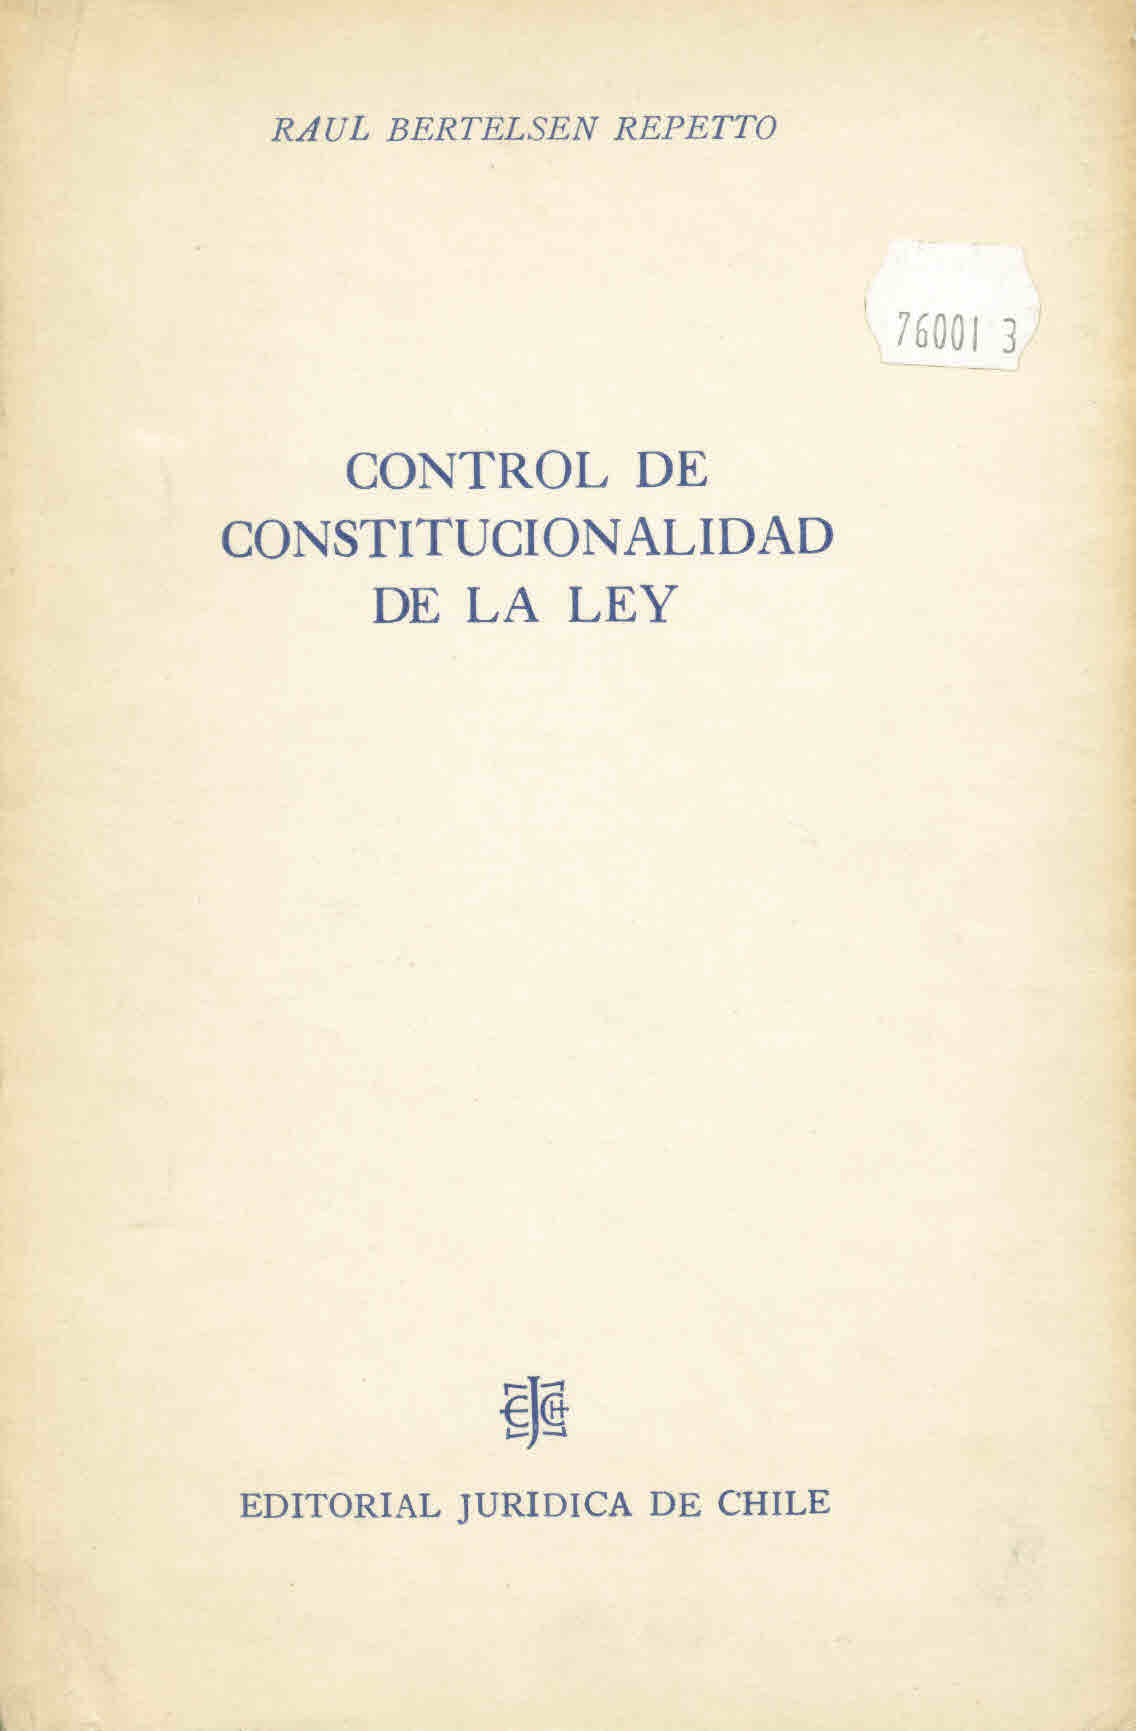 Control de constitucionalidad de la ley